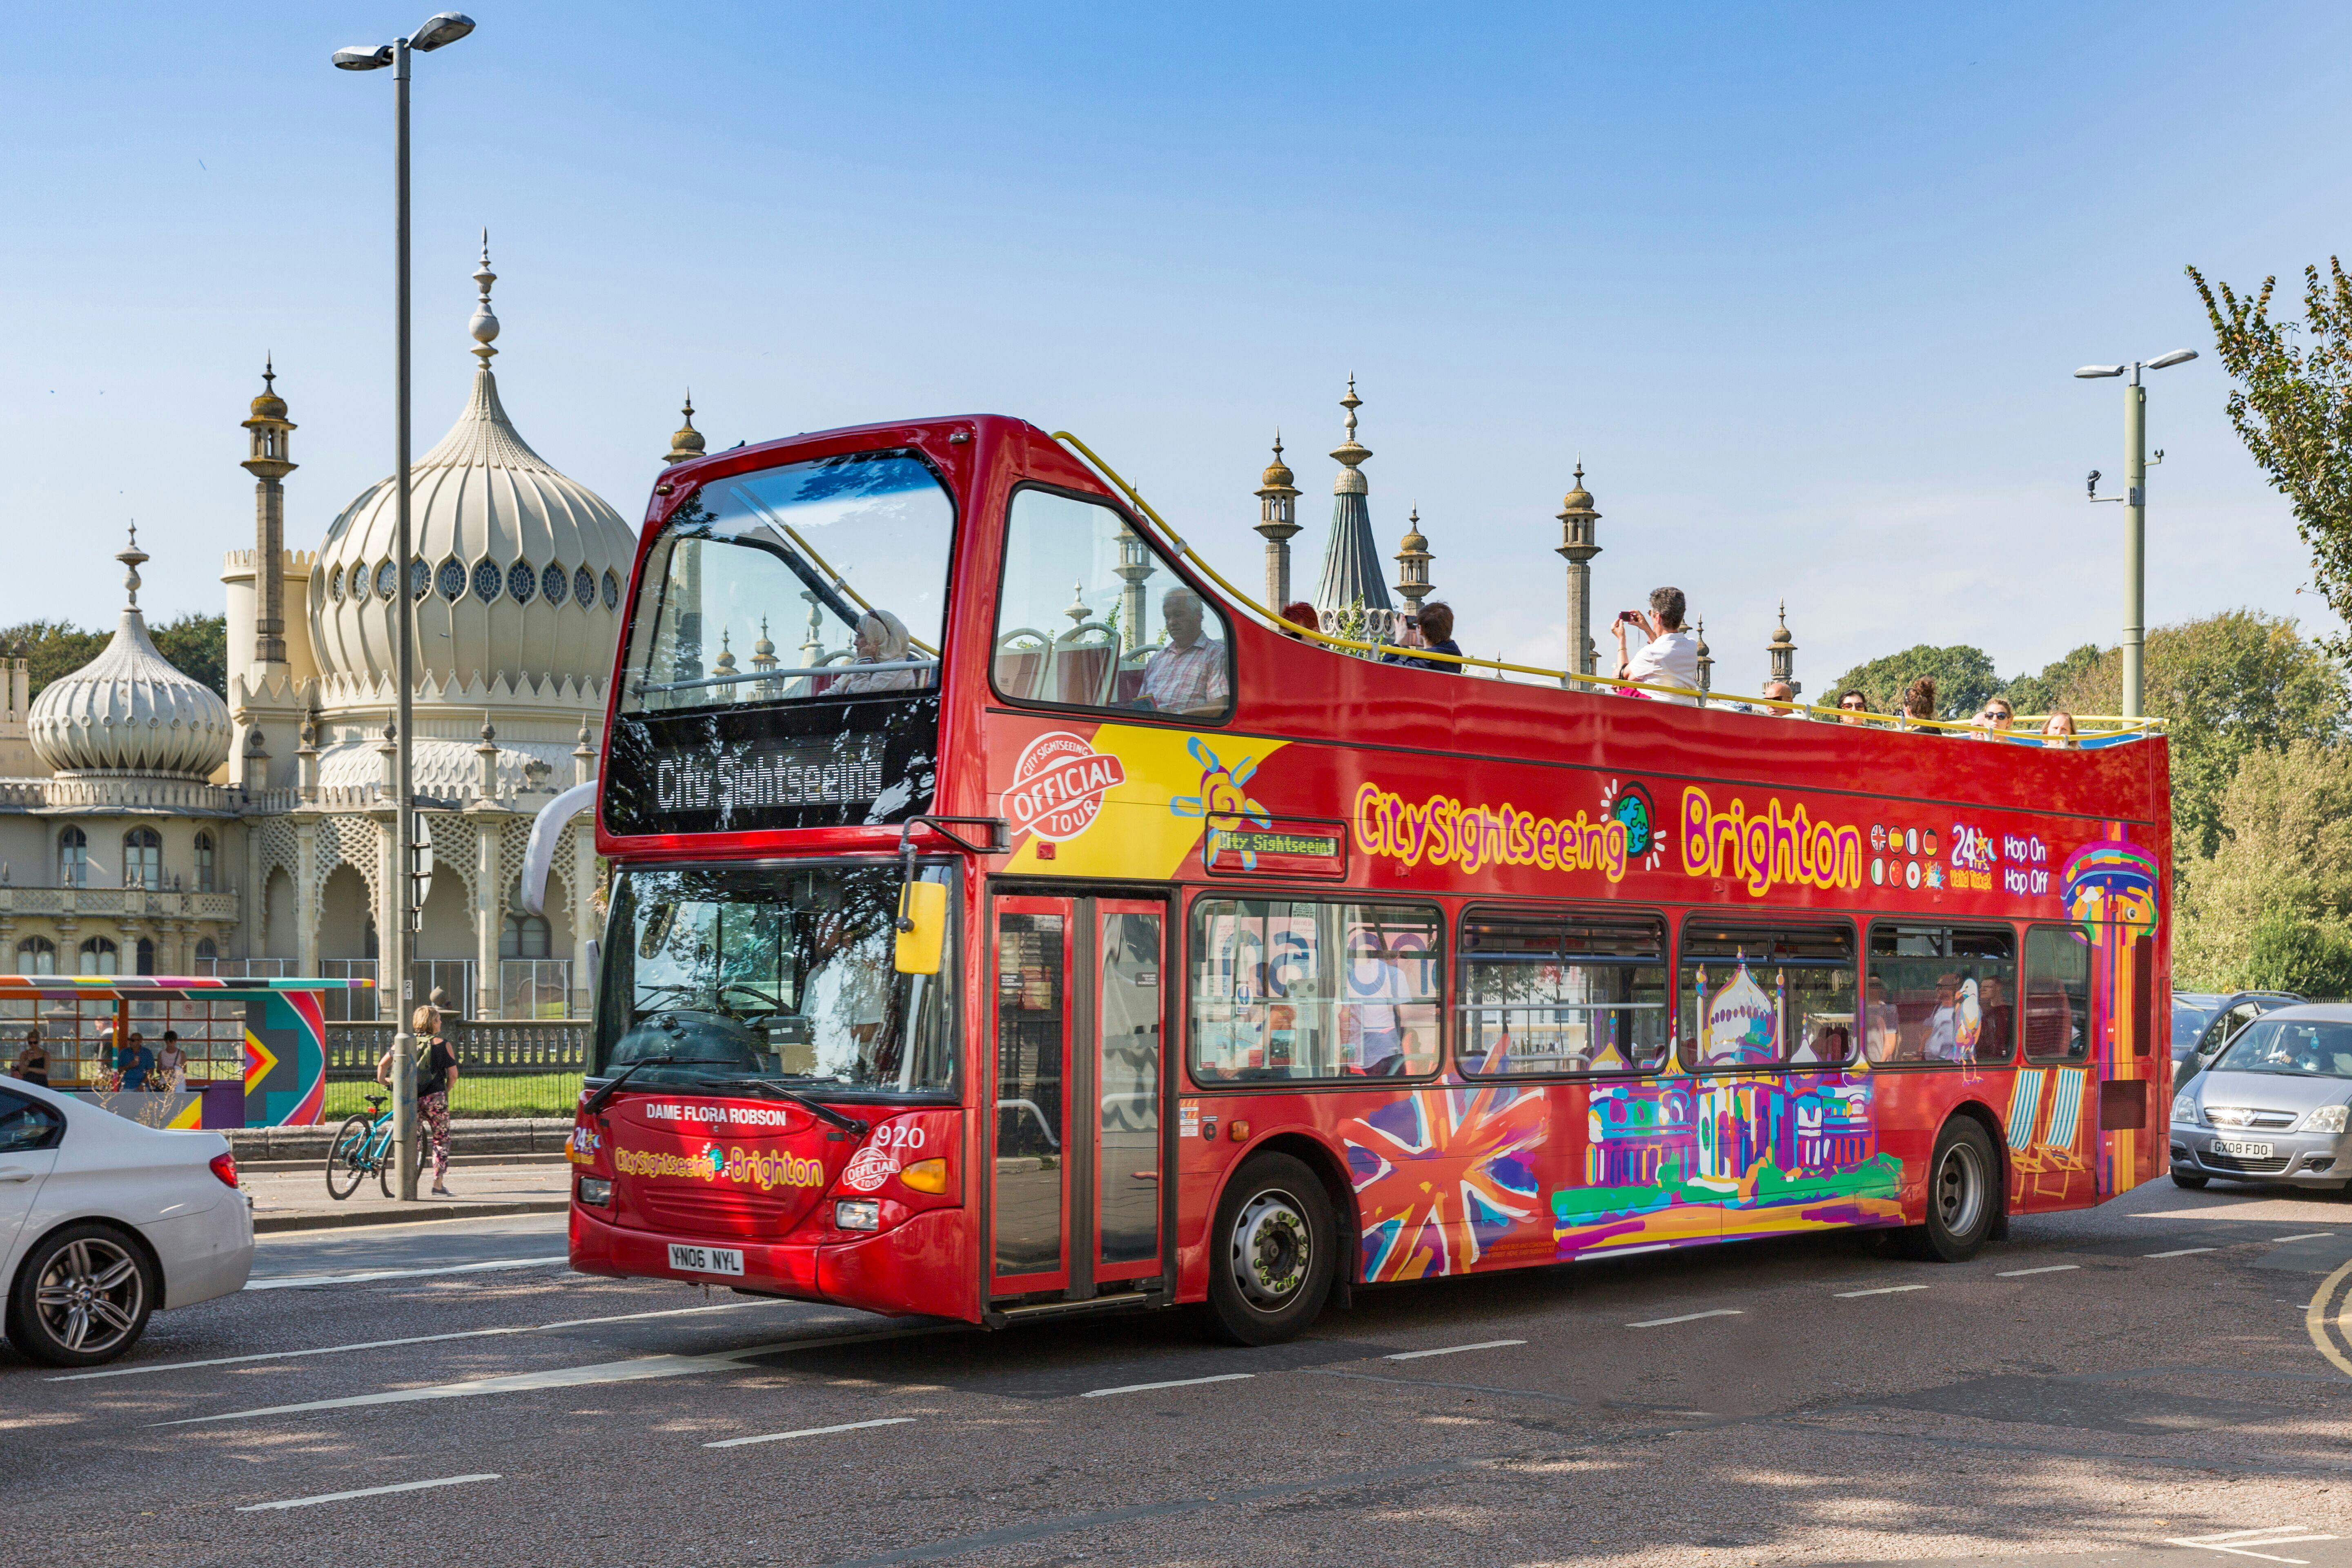 Tour en autobús turístico City Sightseeing por Brighton